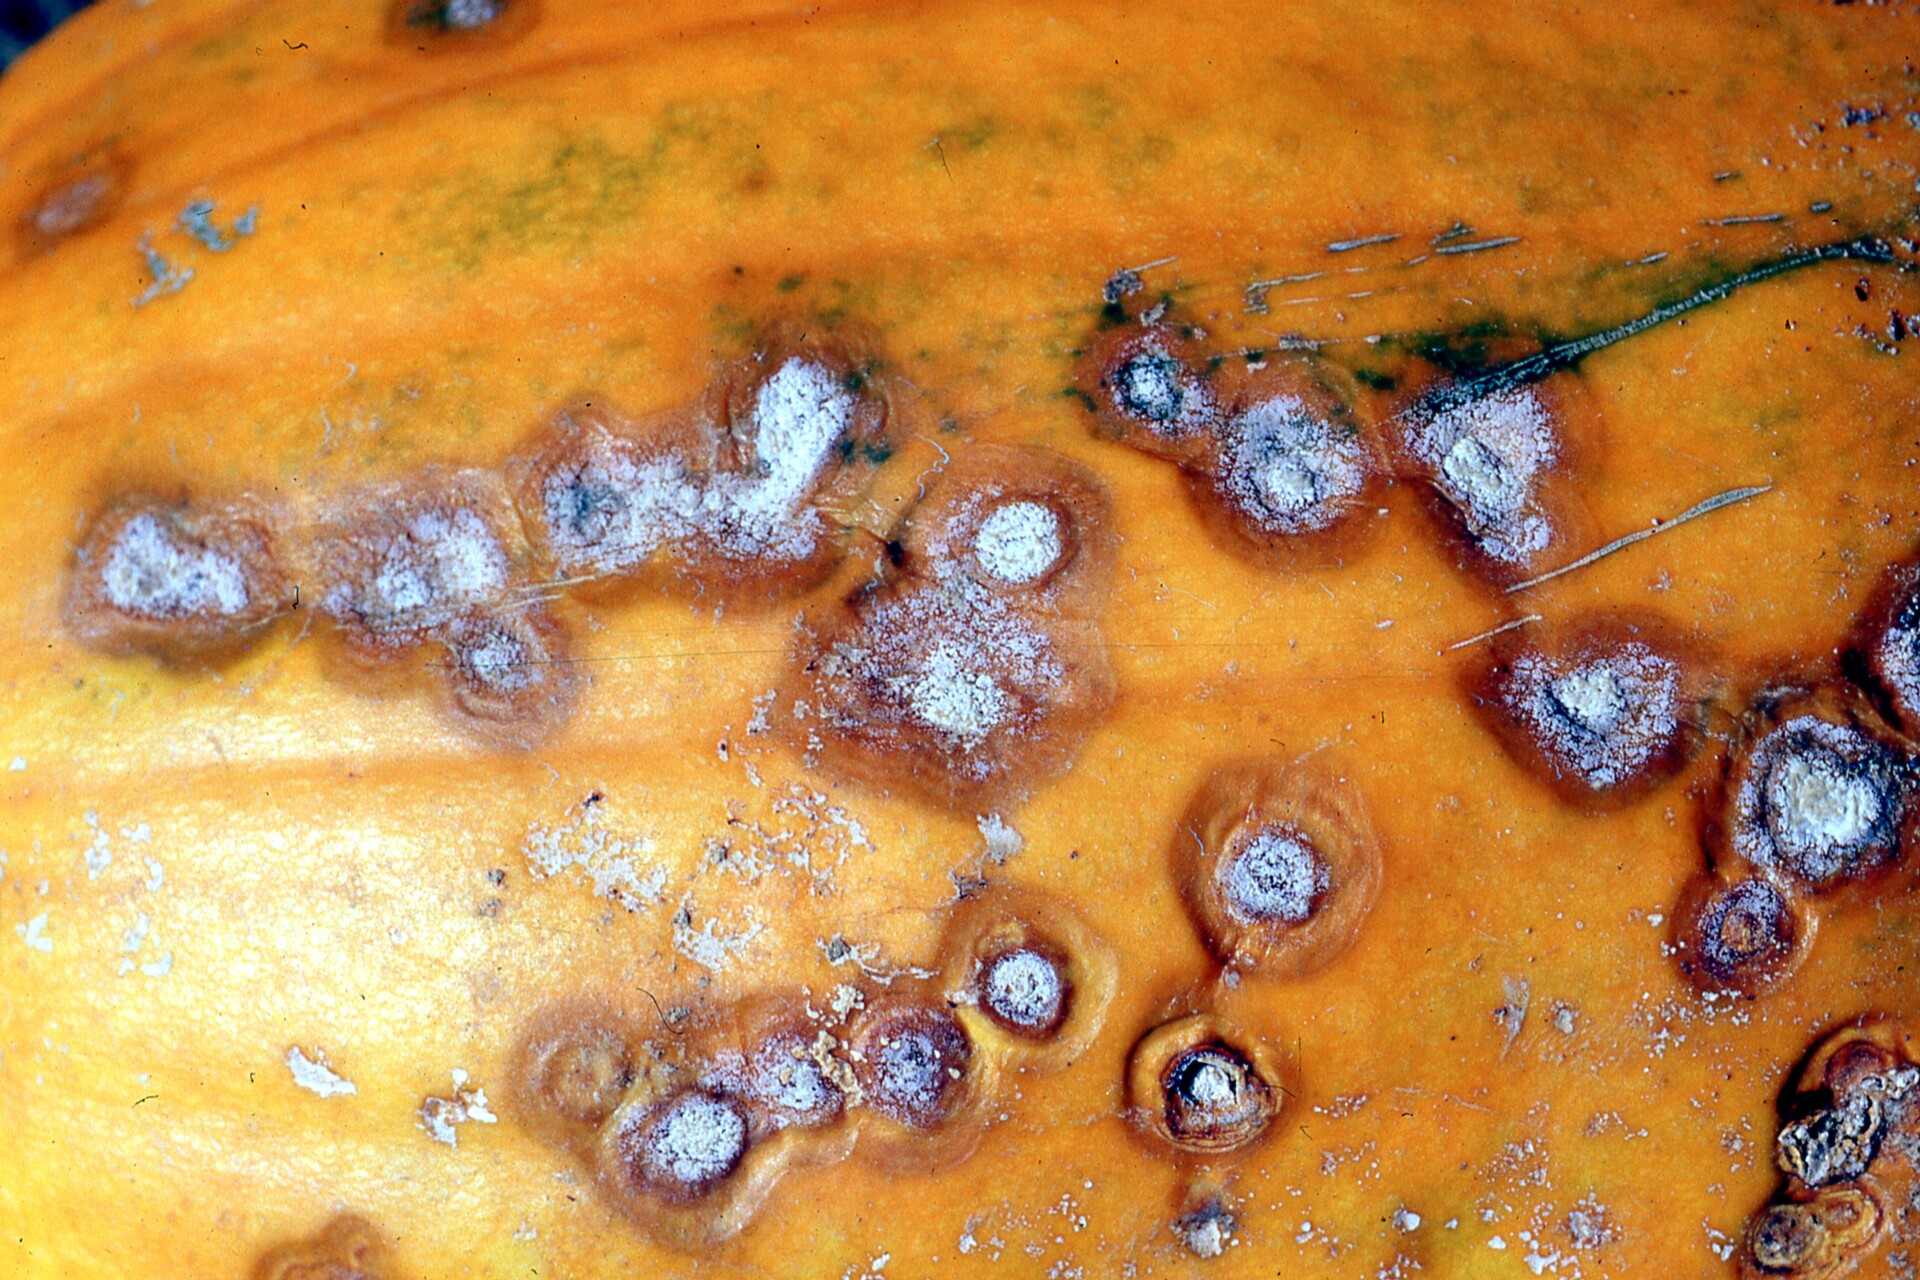 Fusarium fruit rot of pumpkin.